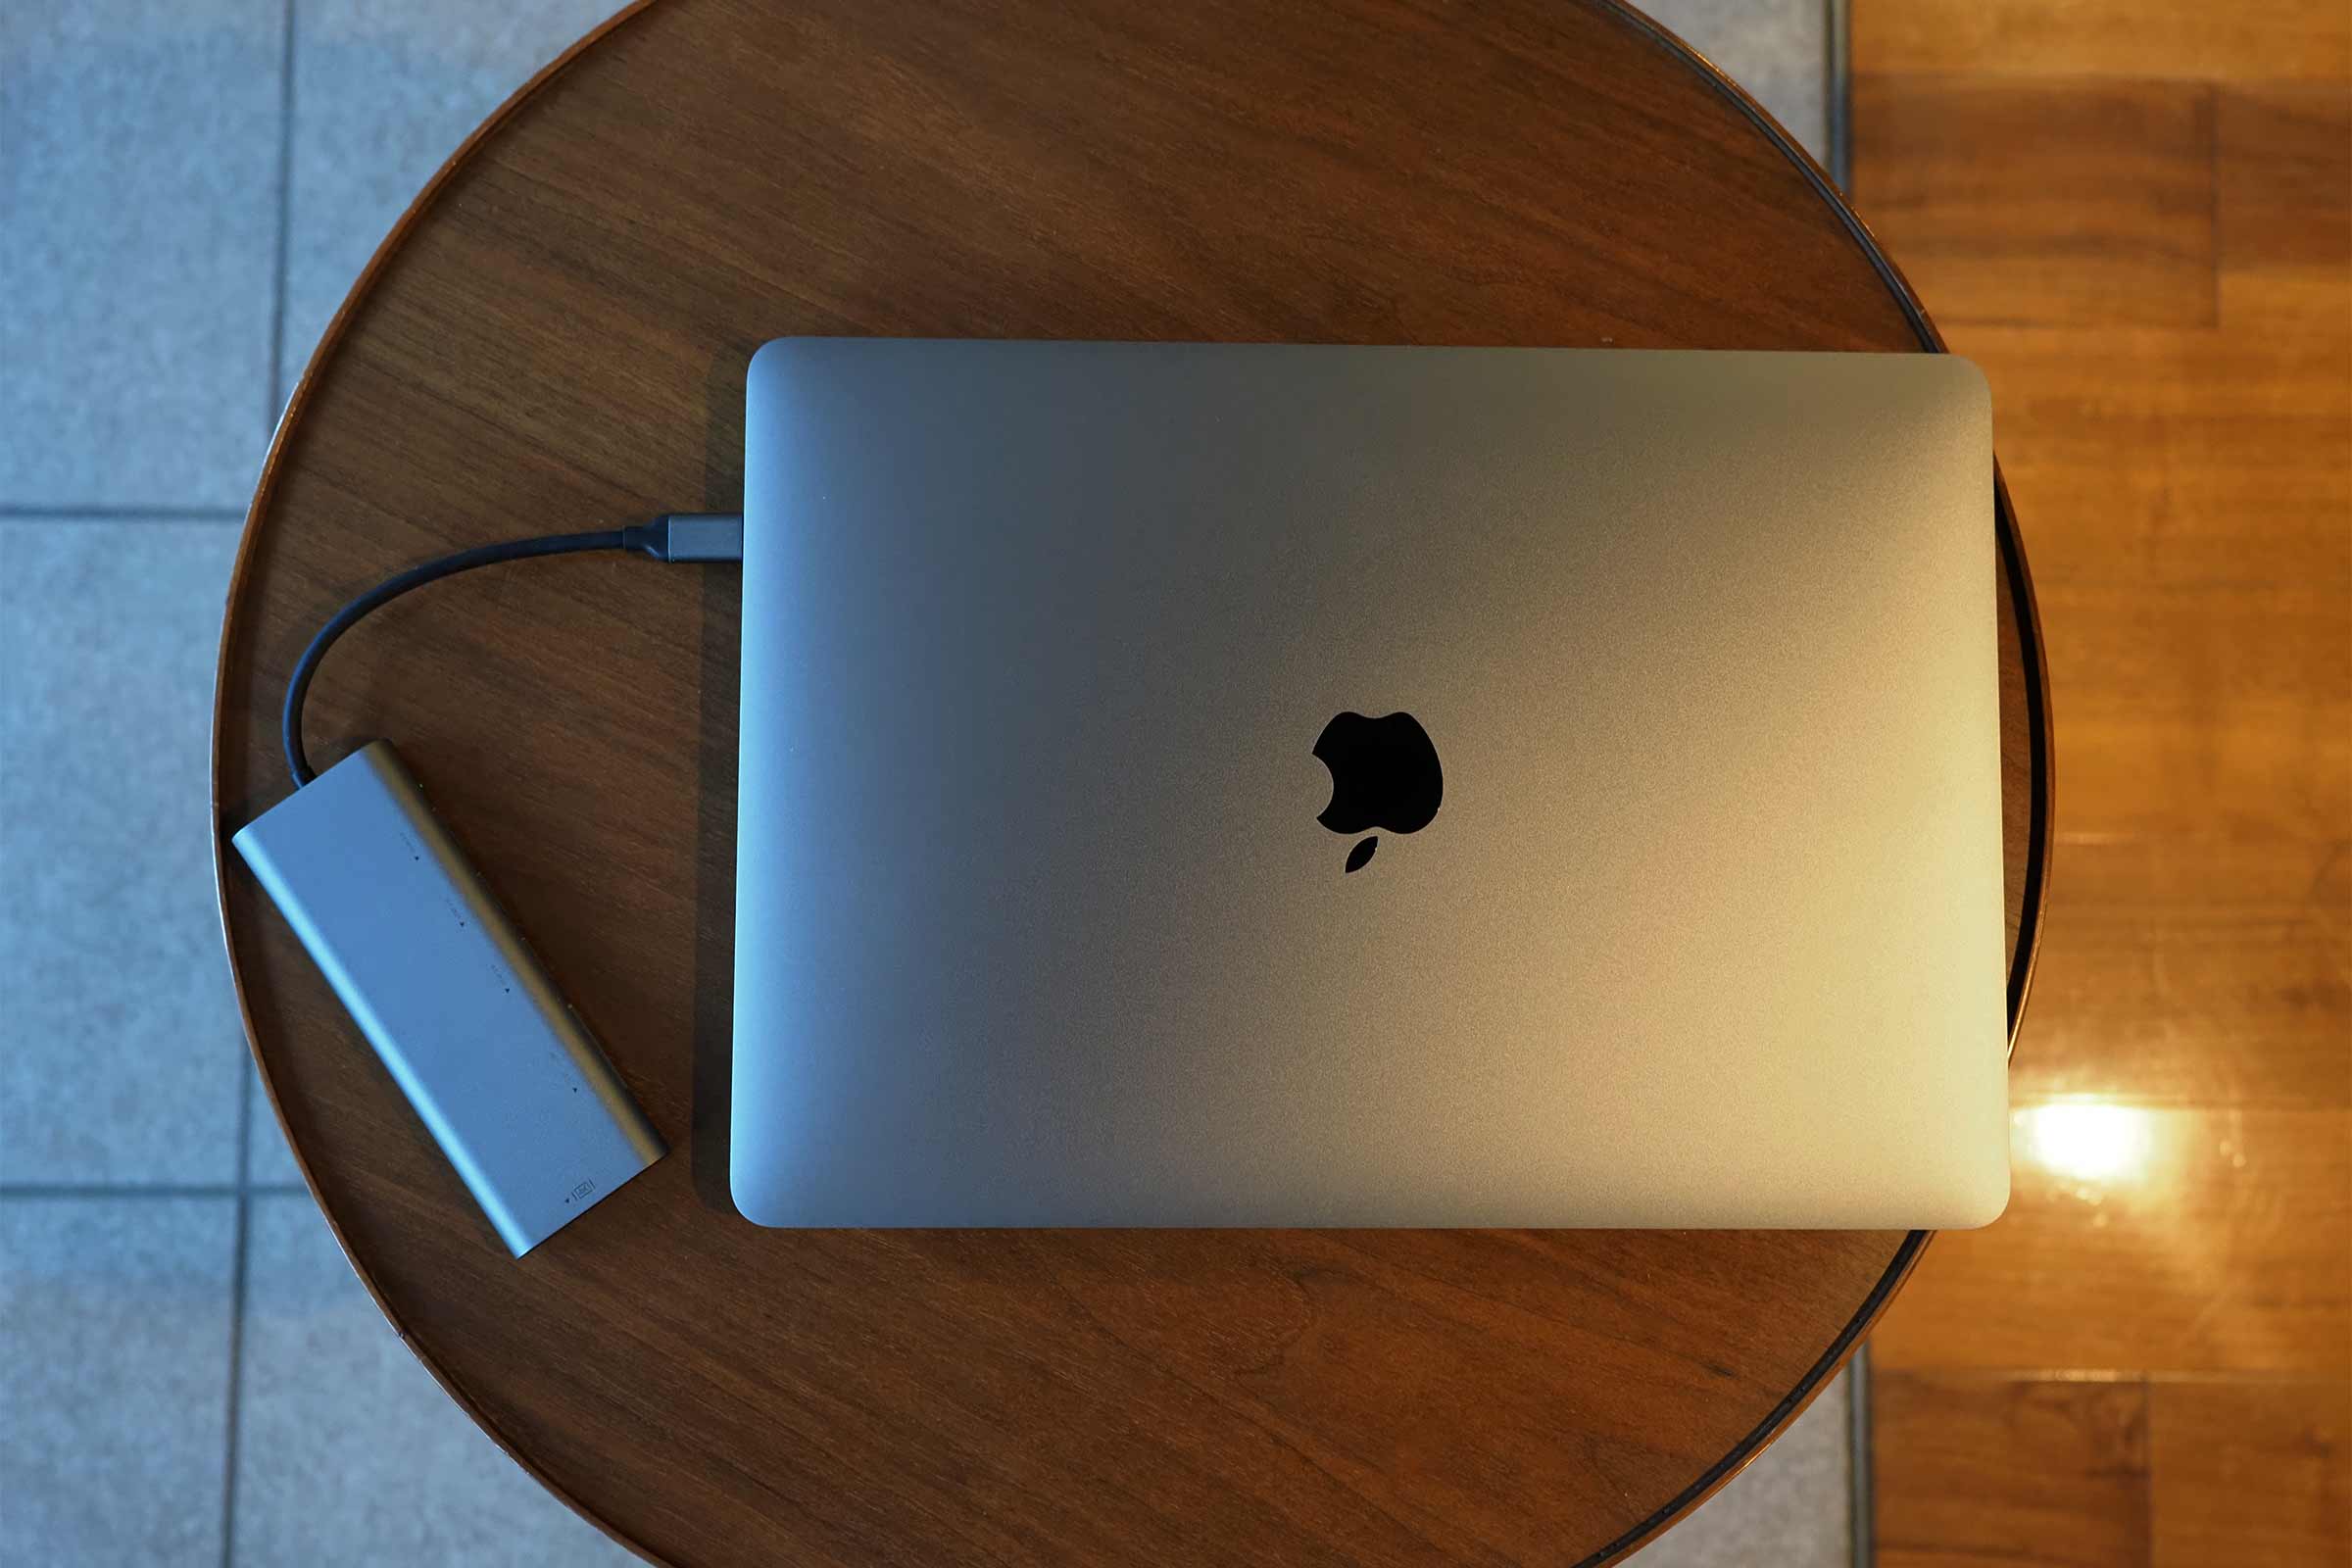 USB-Cハブ,MacBook Pro,パソコン,ガジェット,HDMI,USB3.0,便利,おすすめ